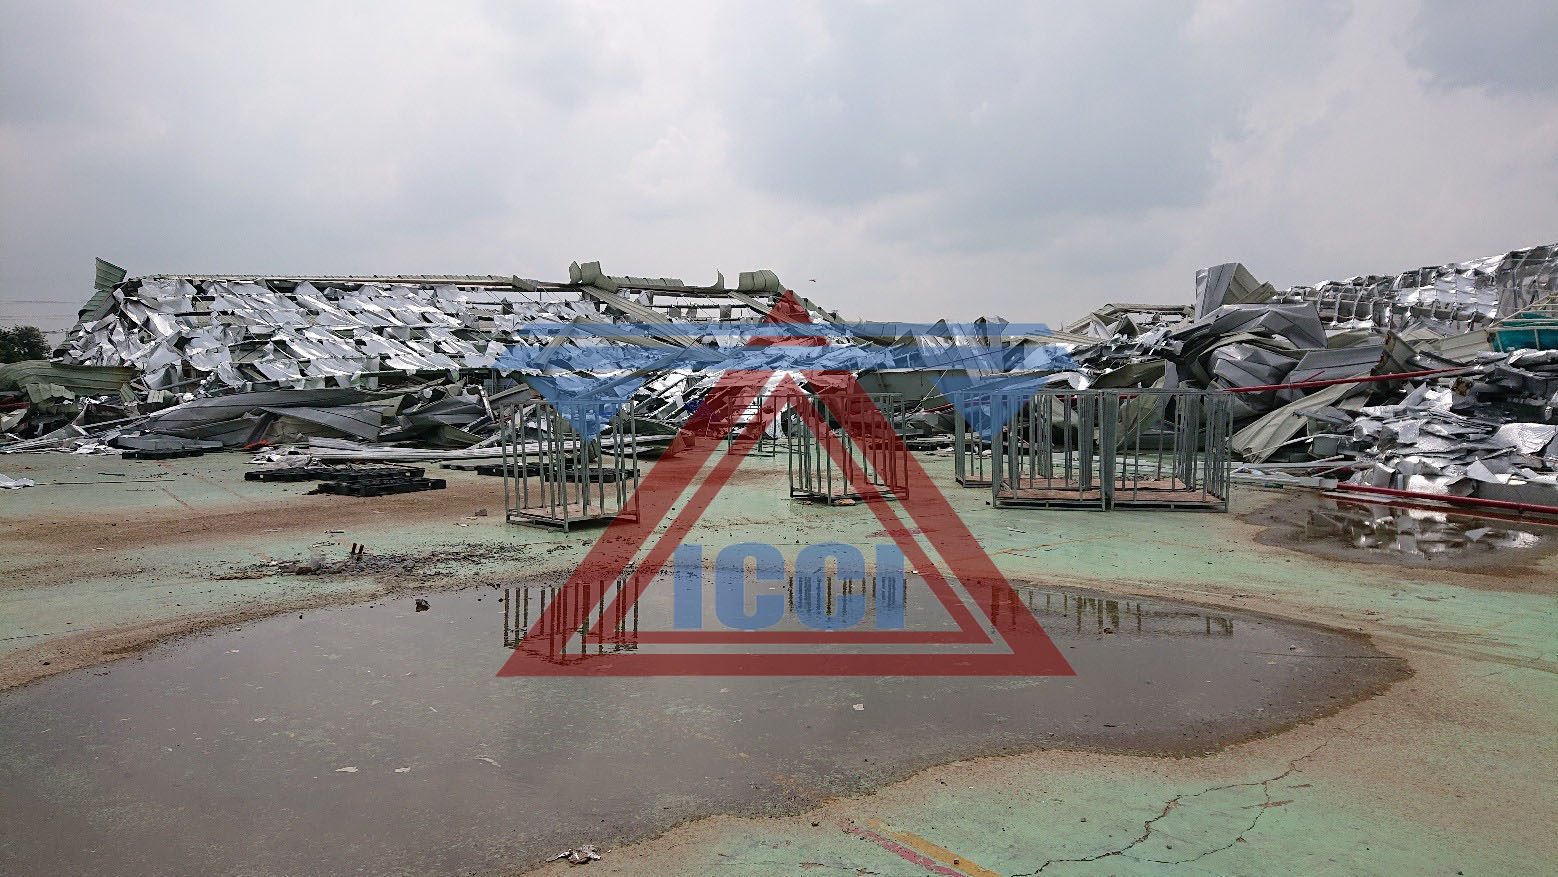 kiểm định chất lượng công trình sau sự cố lốc xoáy làm sập nhà xưởng HanSae 